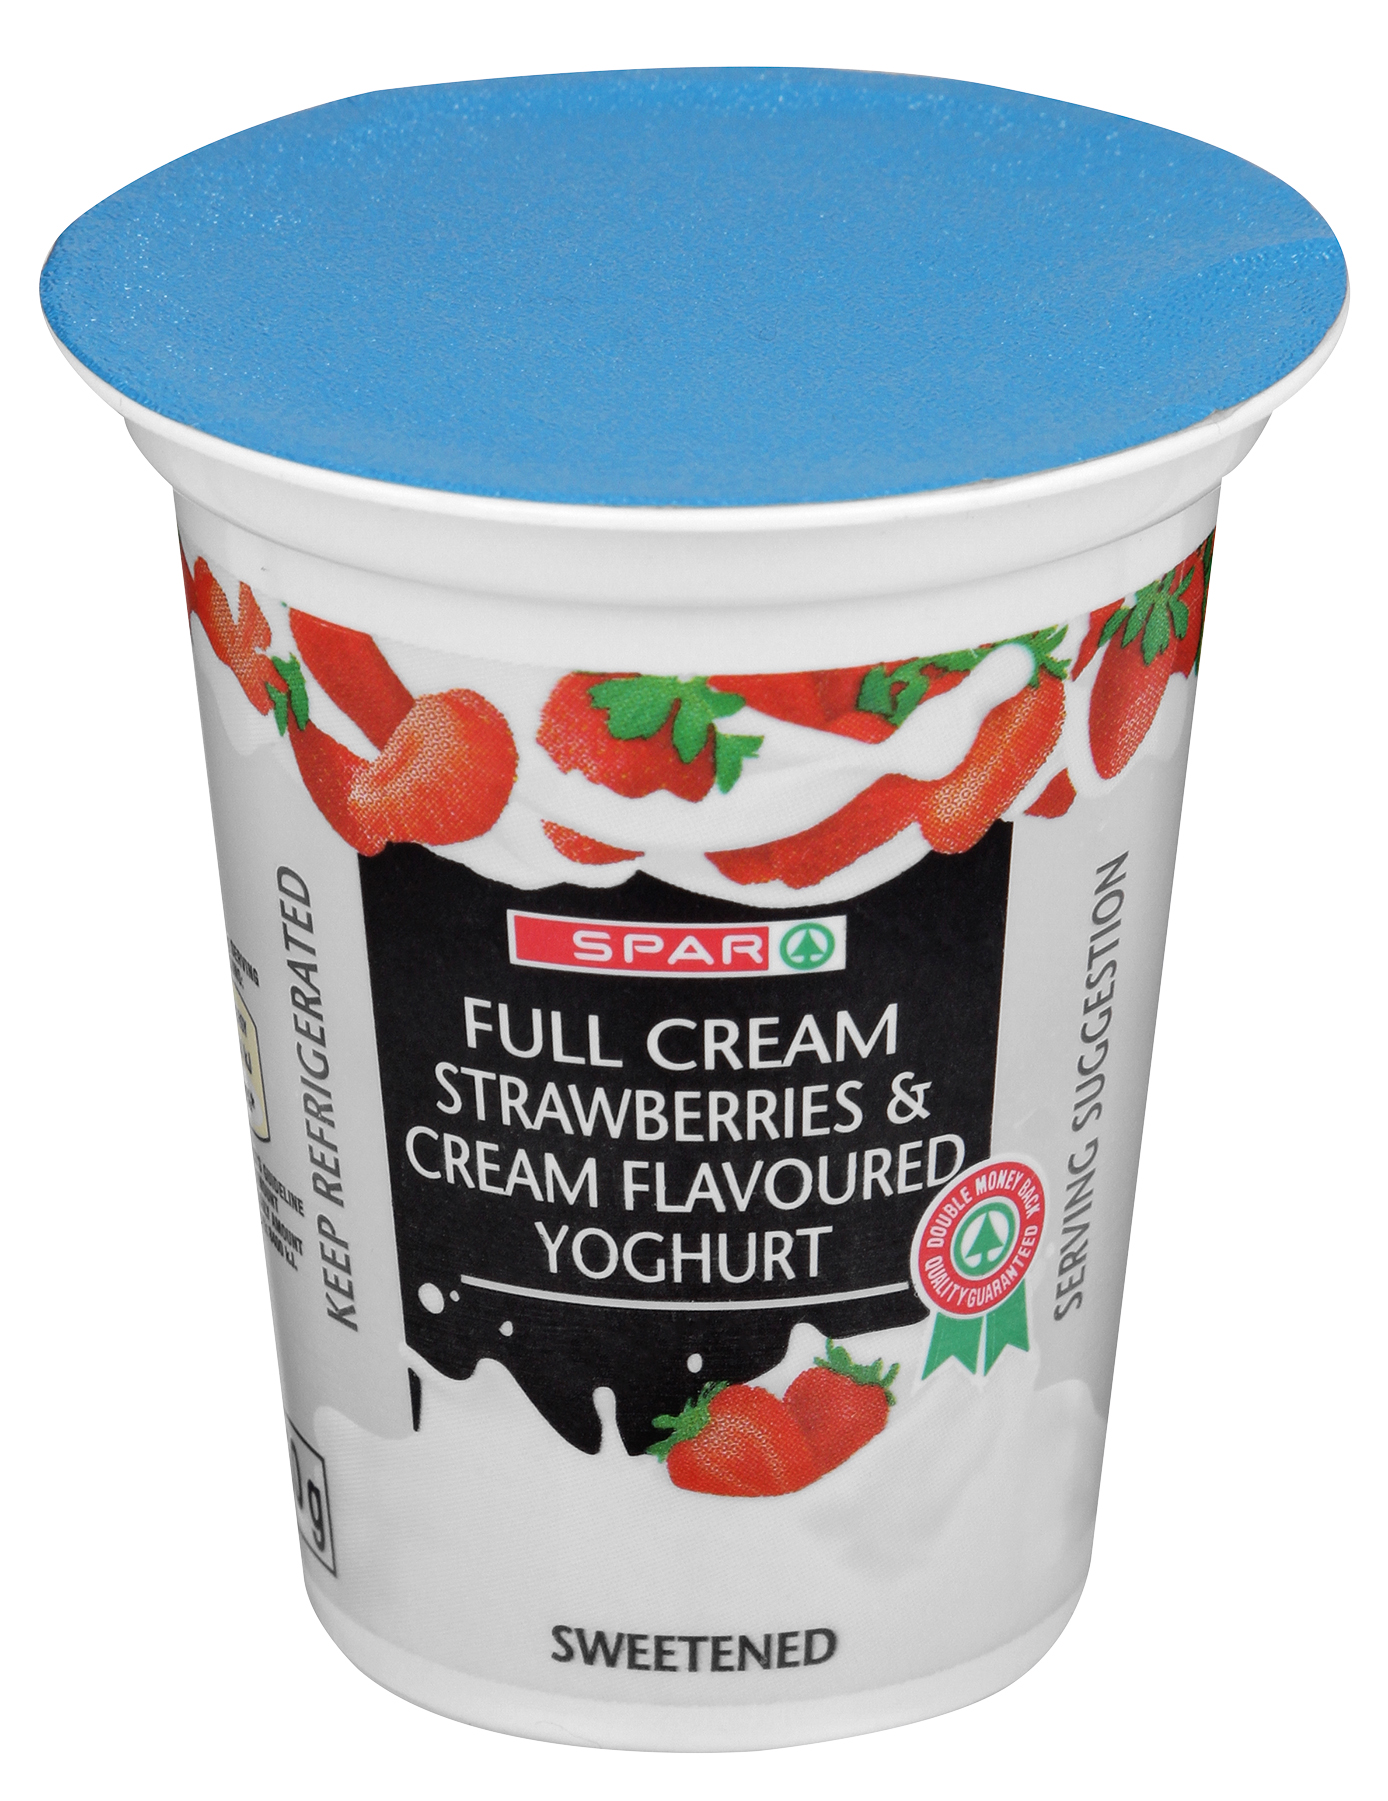 full cream yoghurt - strawberries and cream